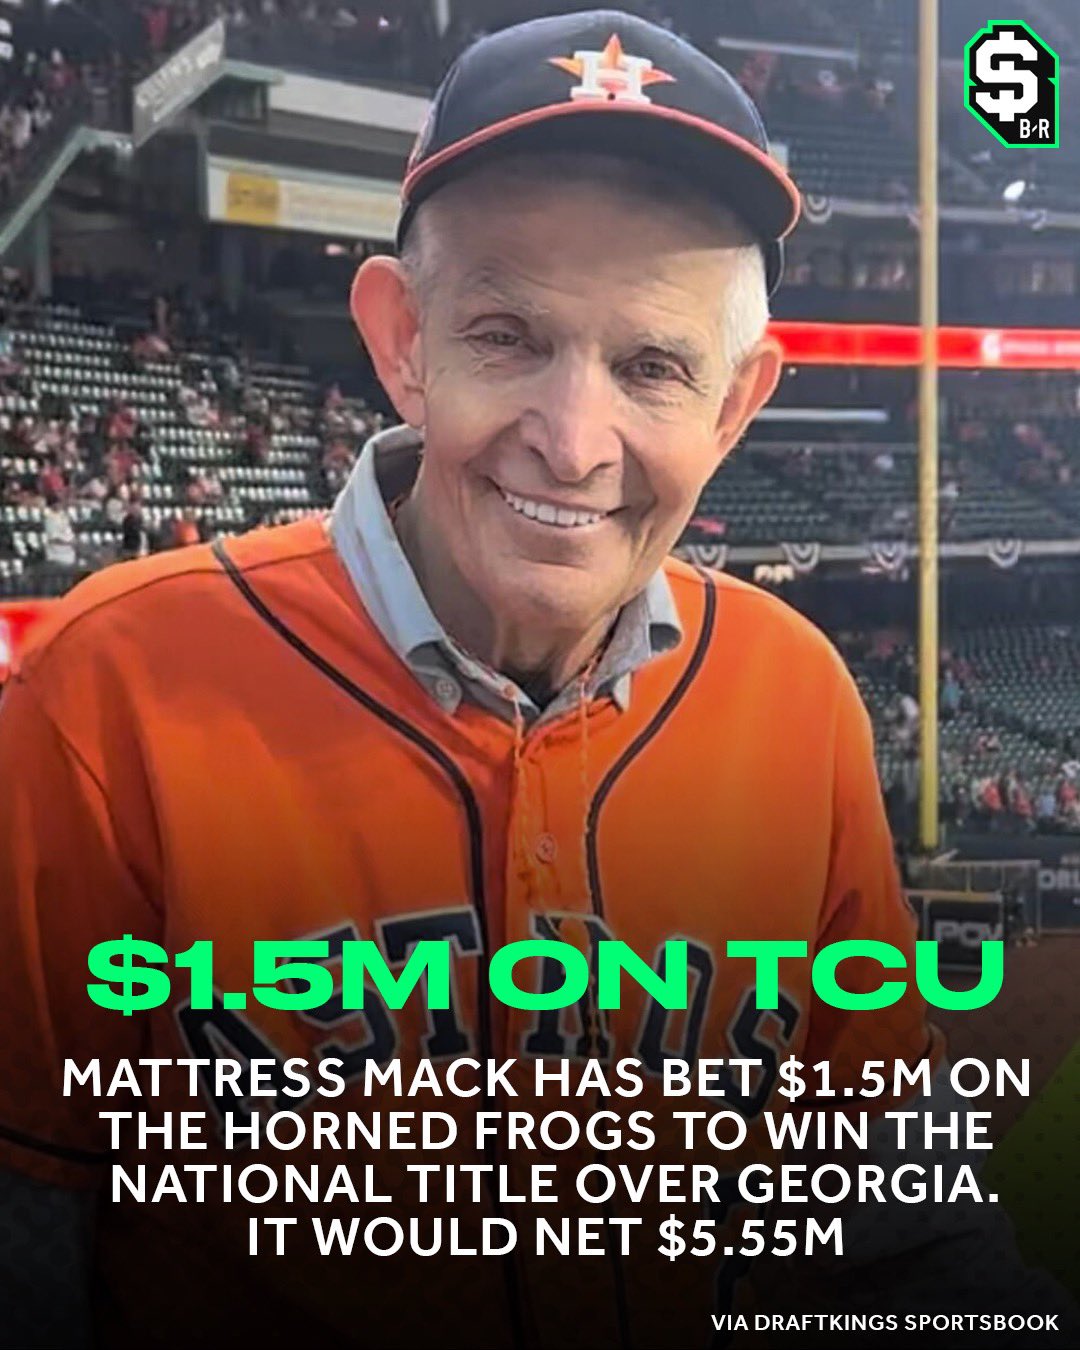 Mattress Mack' drops $1.5 million on TCU to win college football